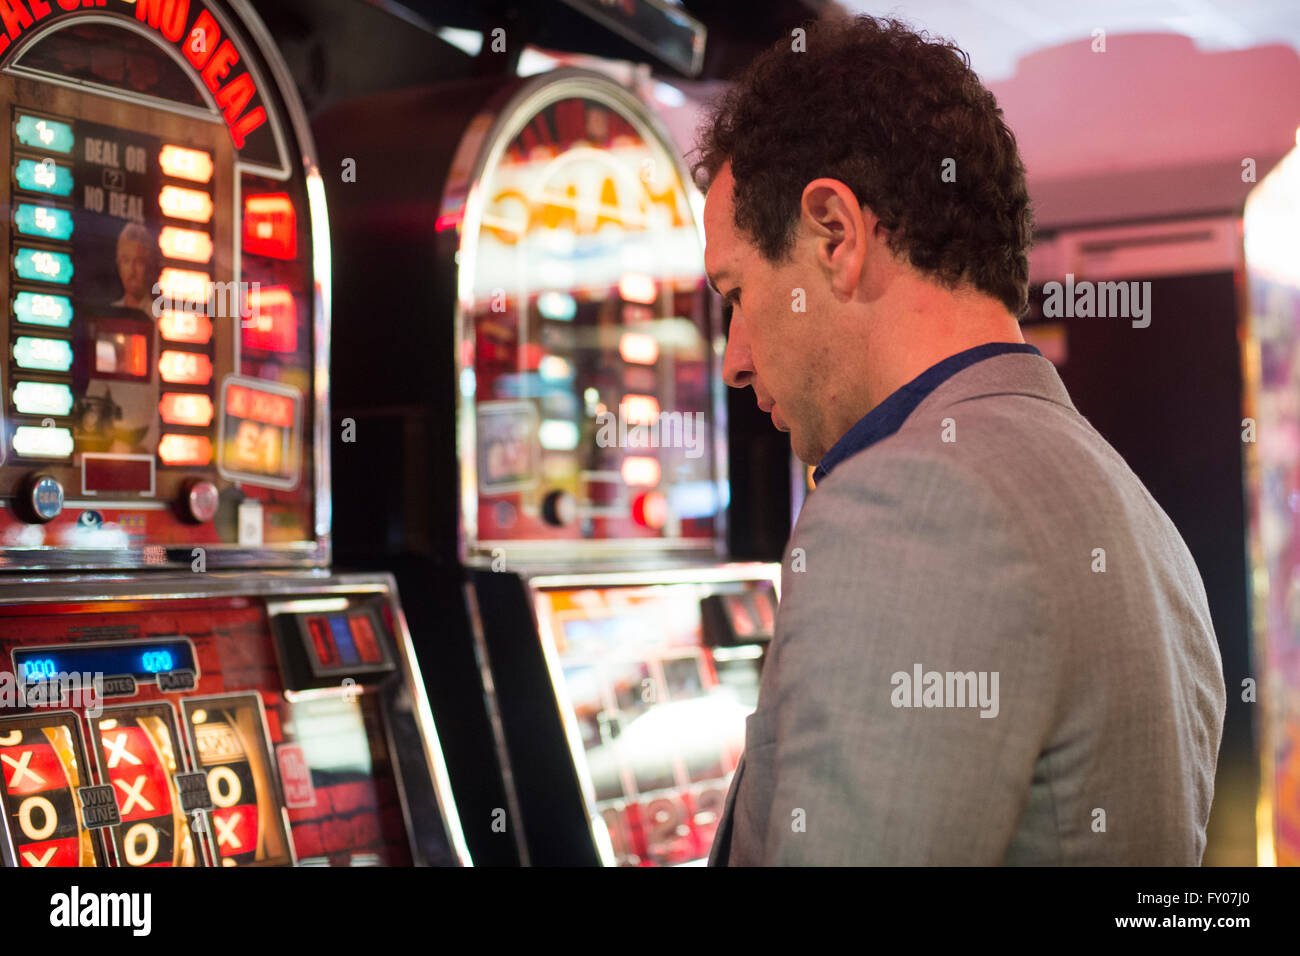 Mann Glücksspiel im Casino mit Spielautomaten Geld zu verlieren Stockfoto